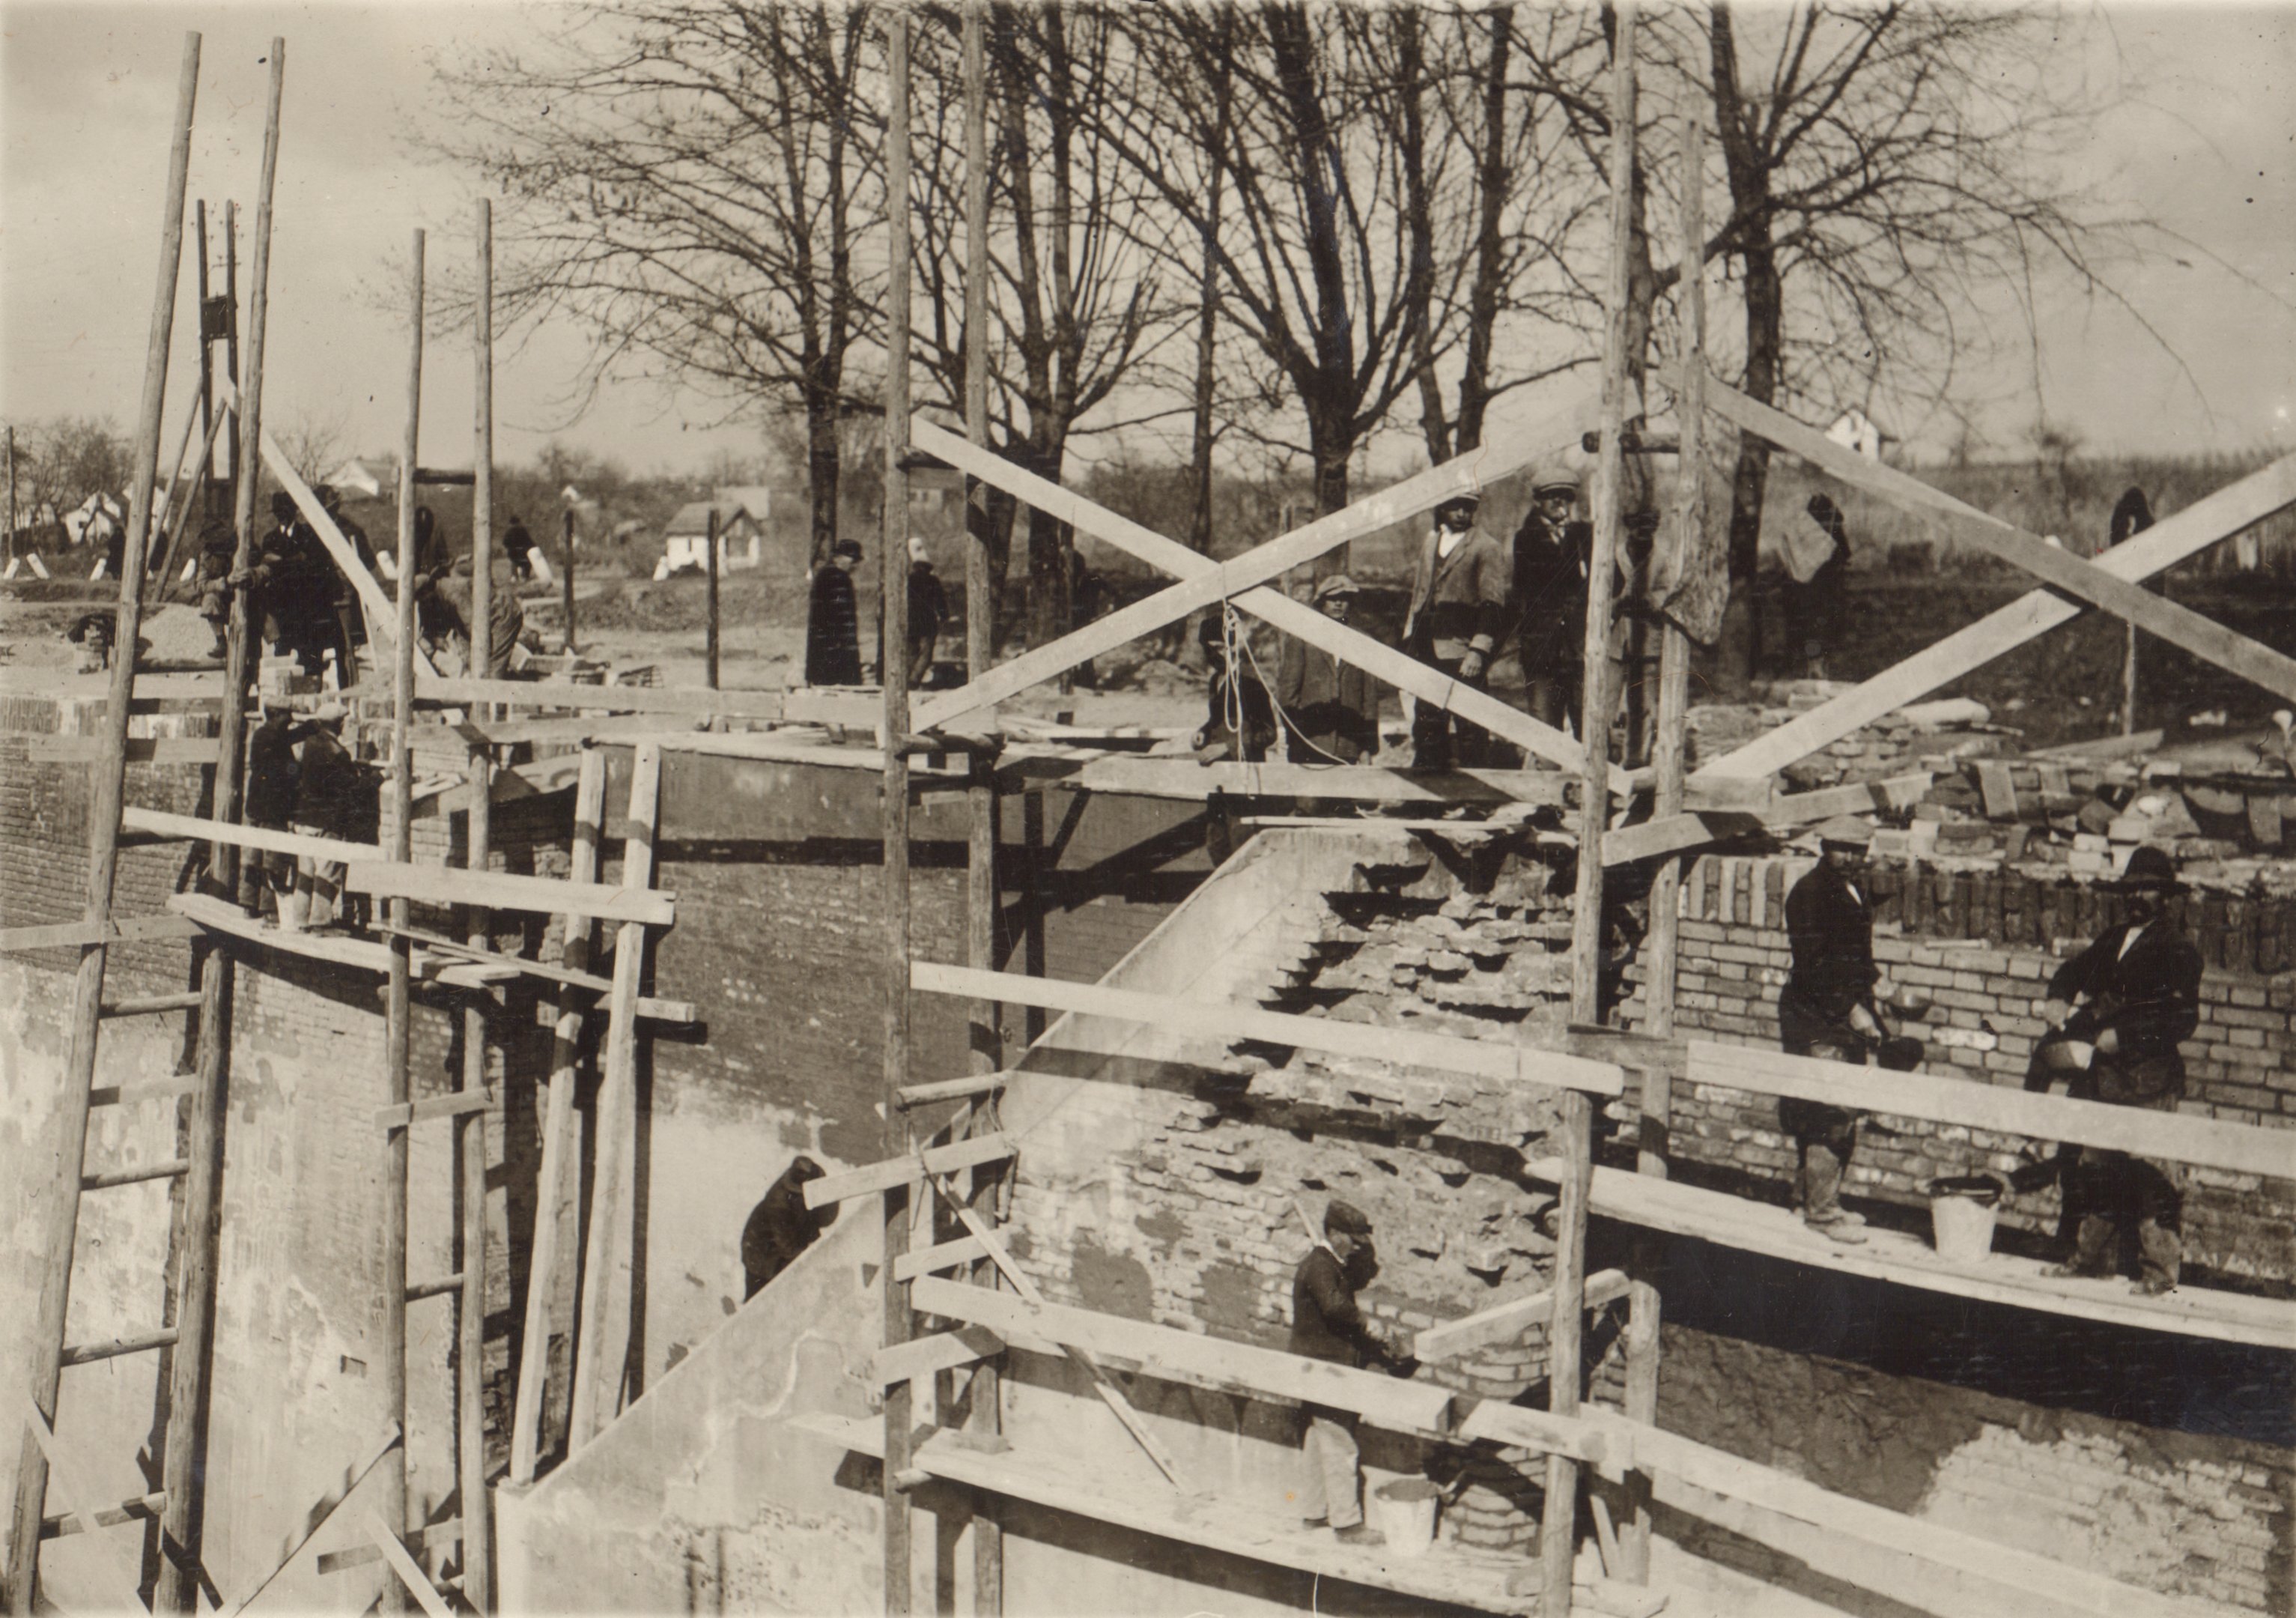 A hajózózsilip baloldali falának javítása. A lejáró körüli falfelület javítás közben, 1932. április 18. (Magyar Környezetvédelmi és Vízügyi Múzeum - Duna Múzeum CC BY-NC-SA)